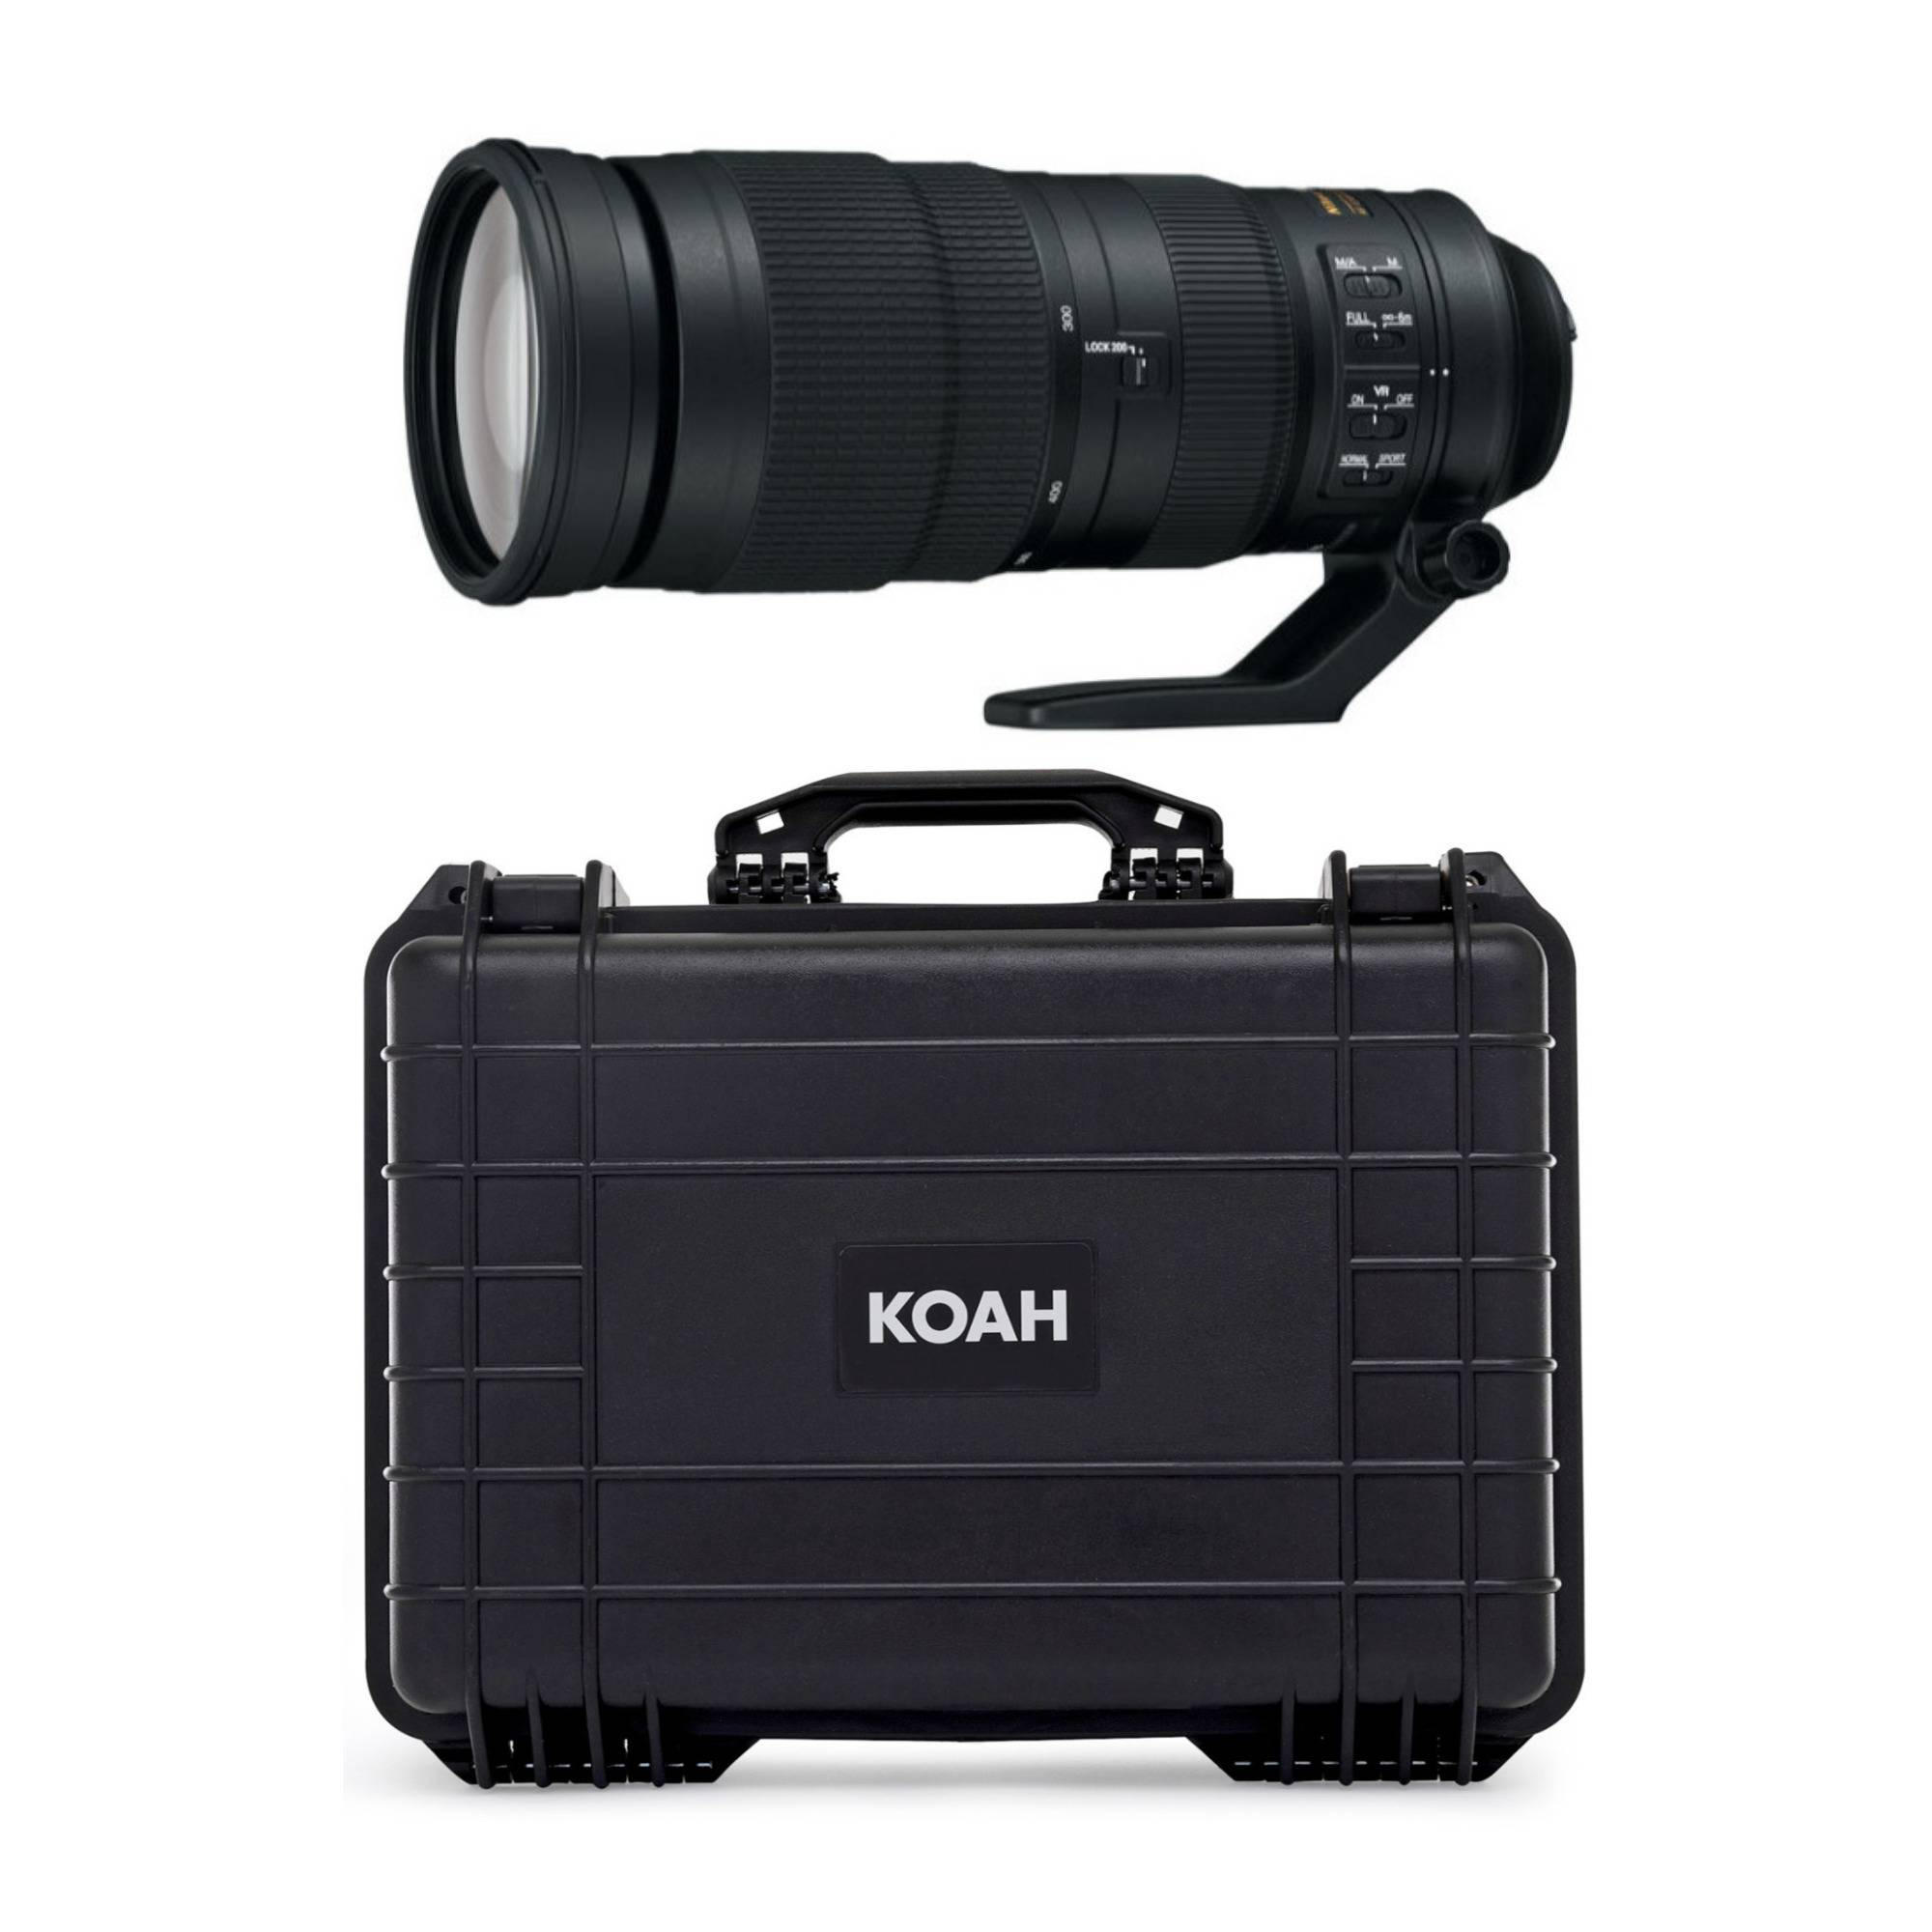 Nikon AF-S NIKKOR 200-500mm f/5.6E ED VR Lens with Koah Weatherproof Hard Case